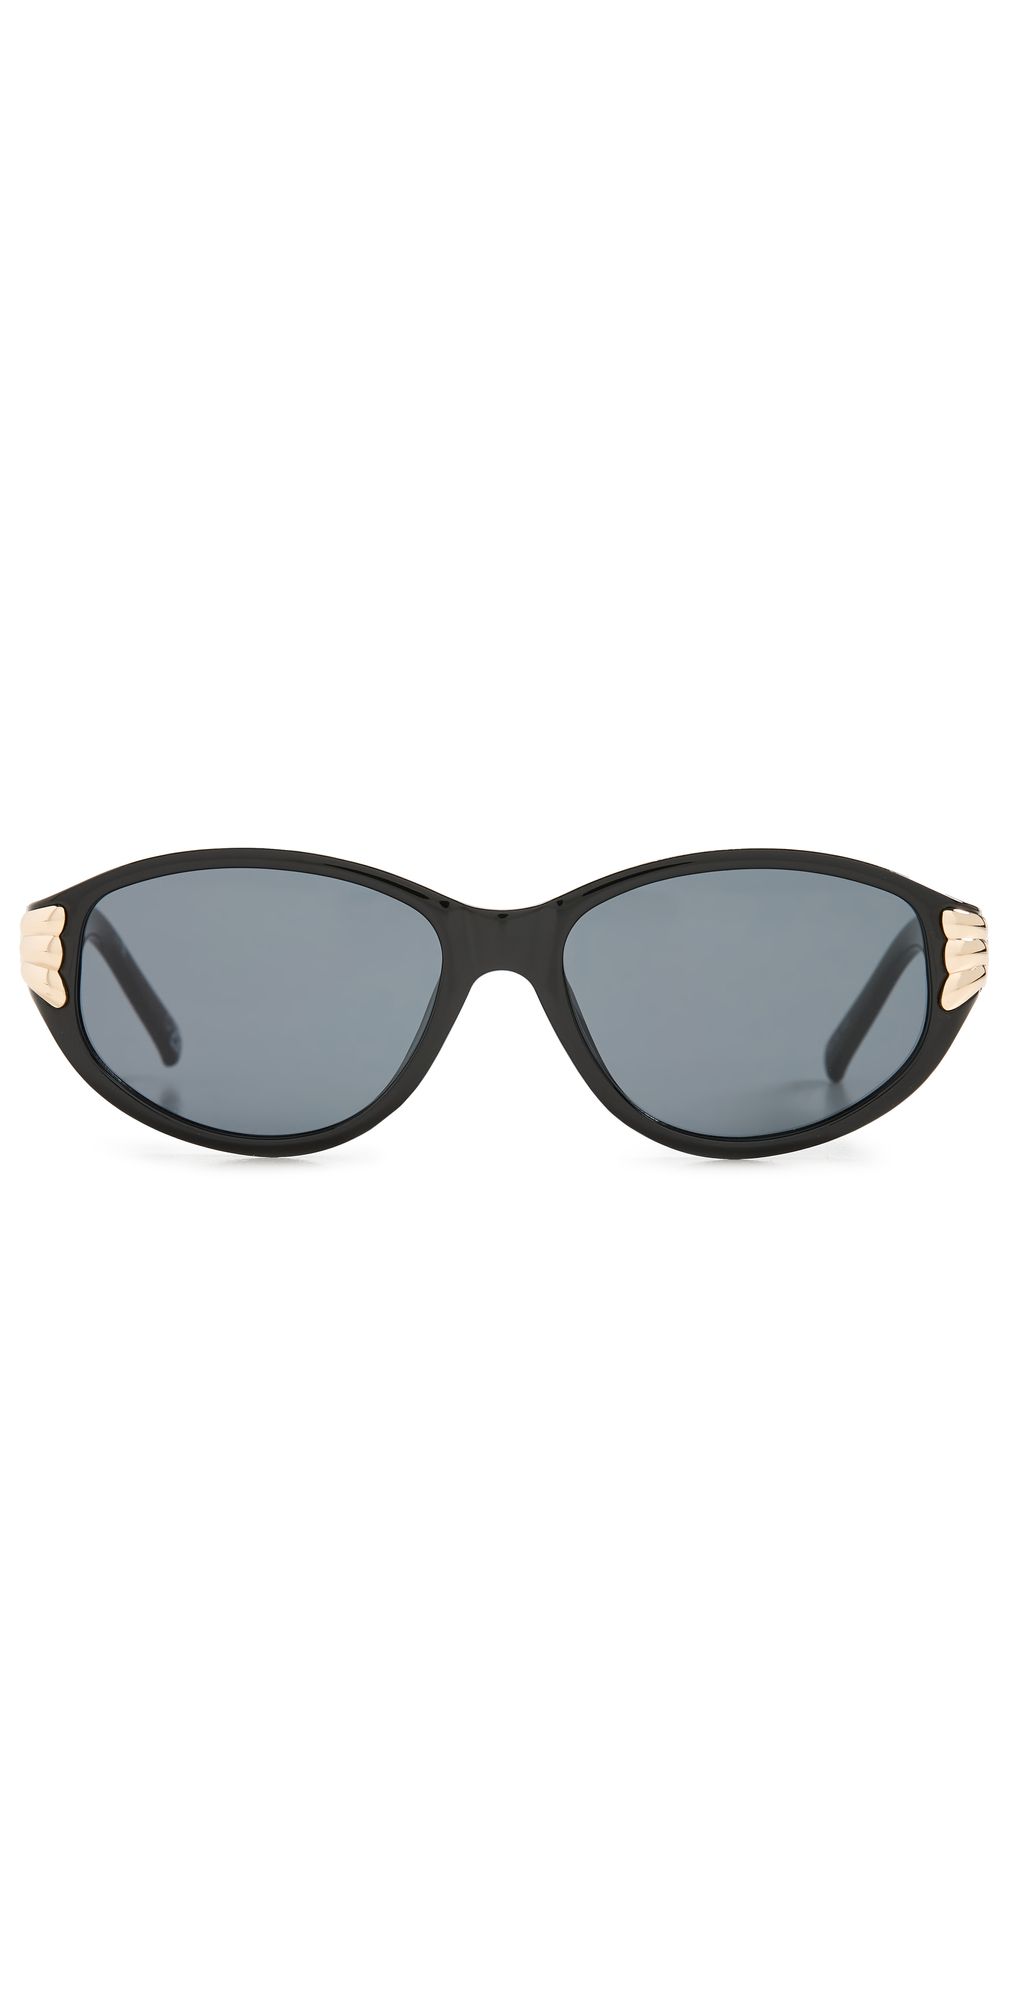 Bombshell Sunglasses | Shopbop